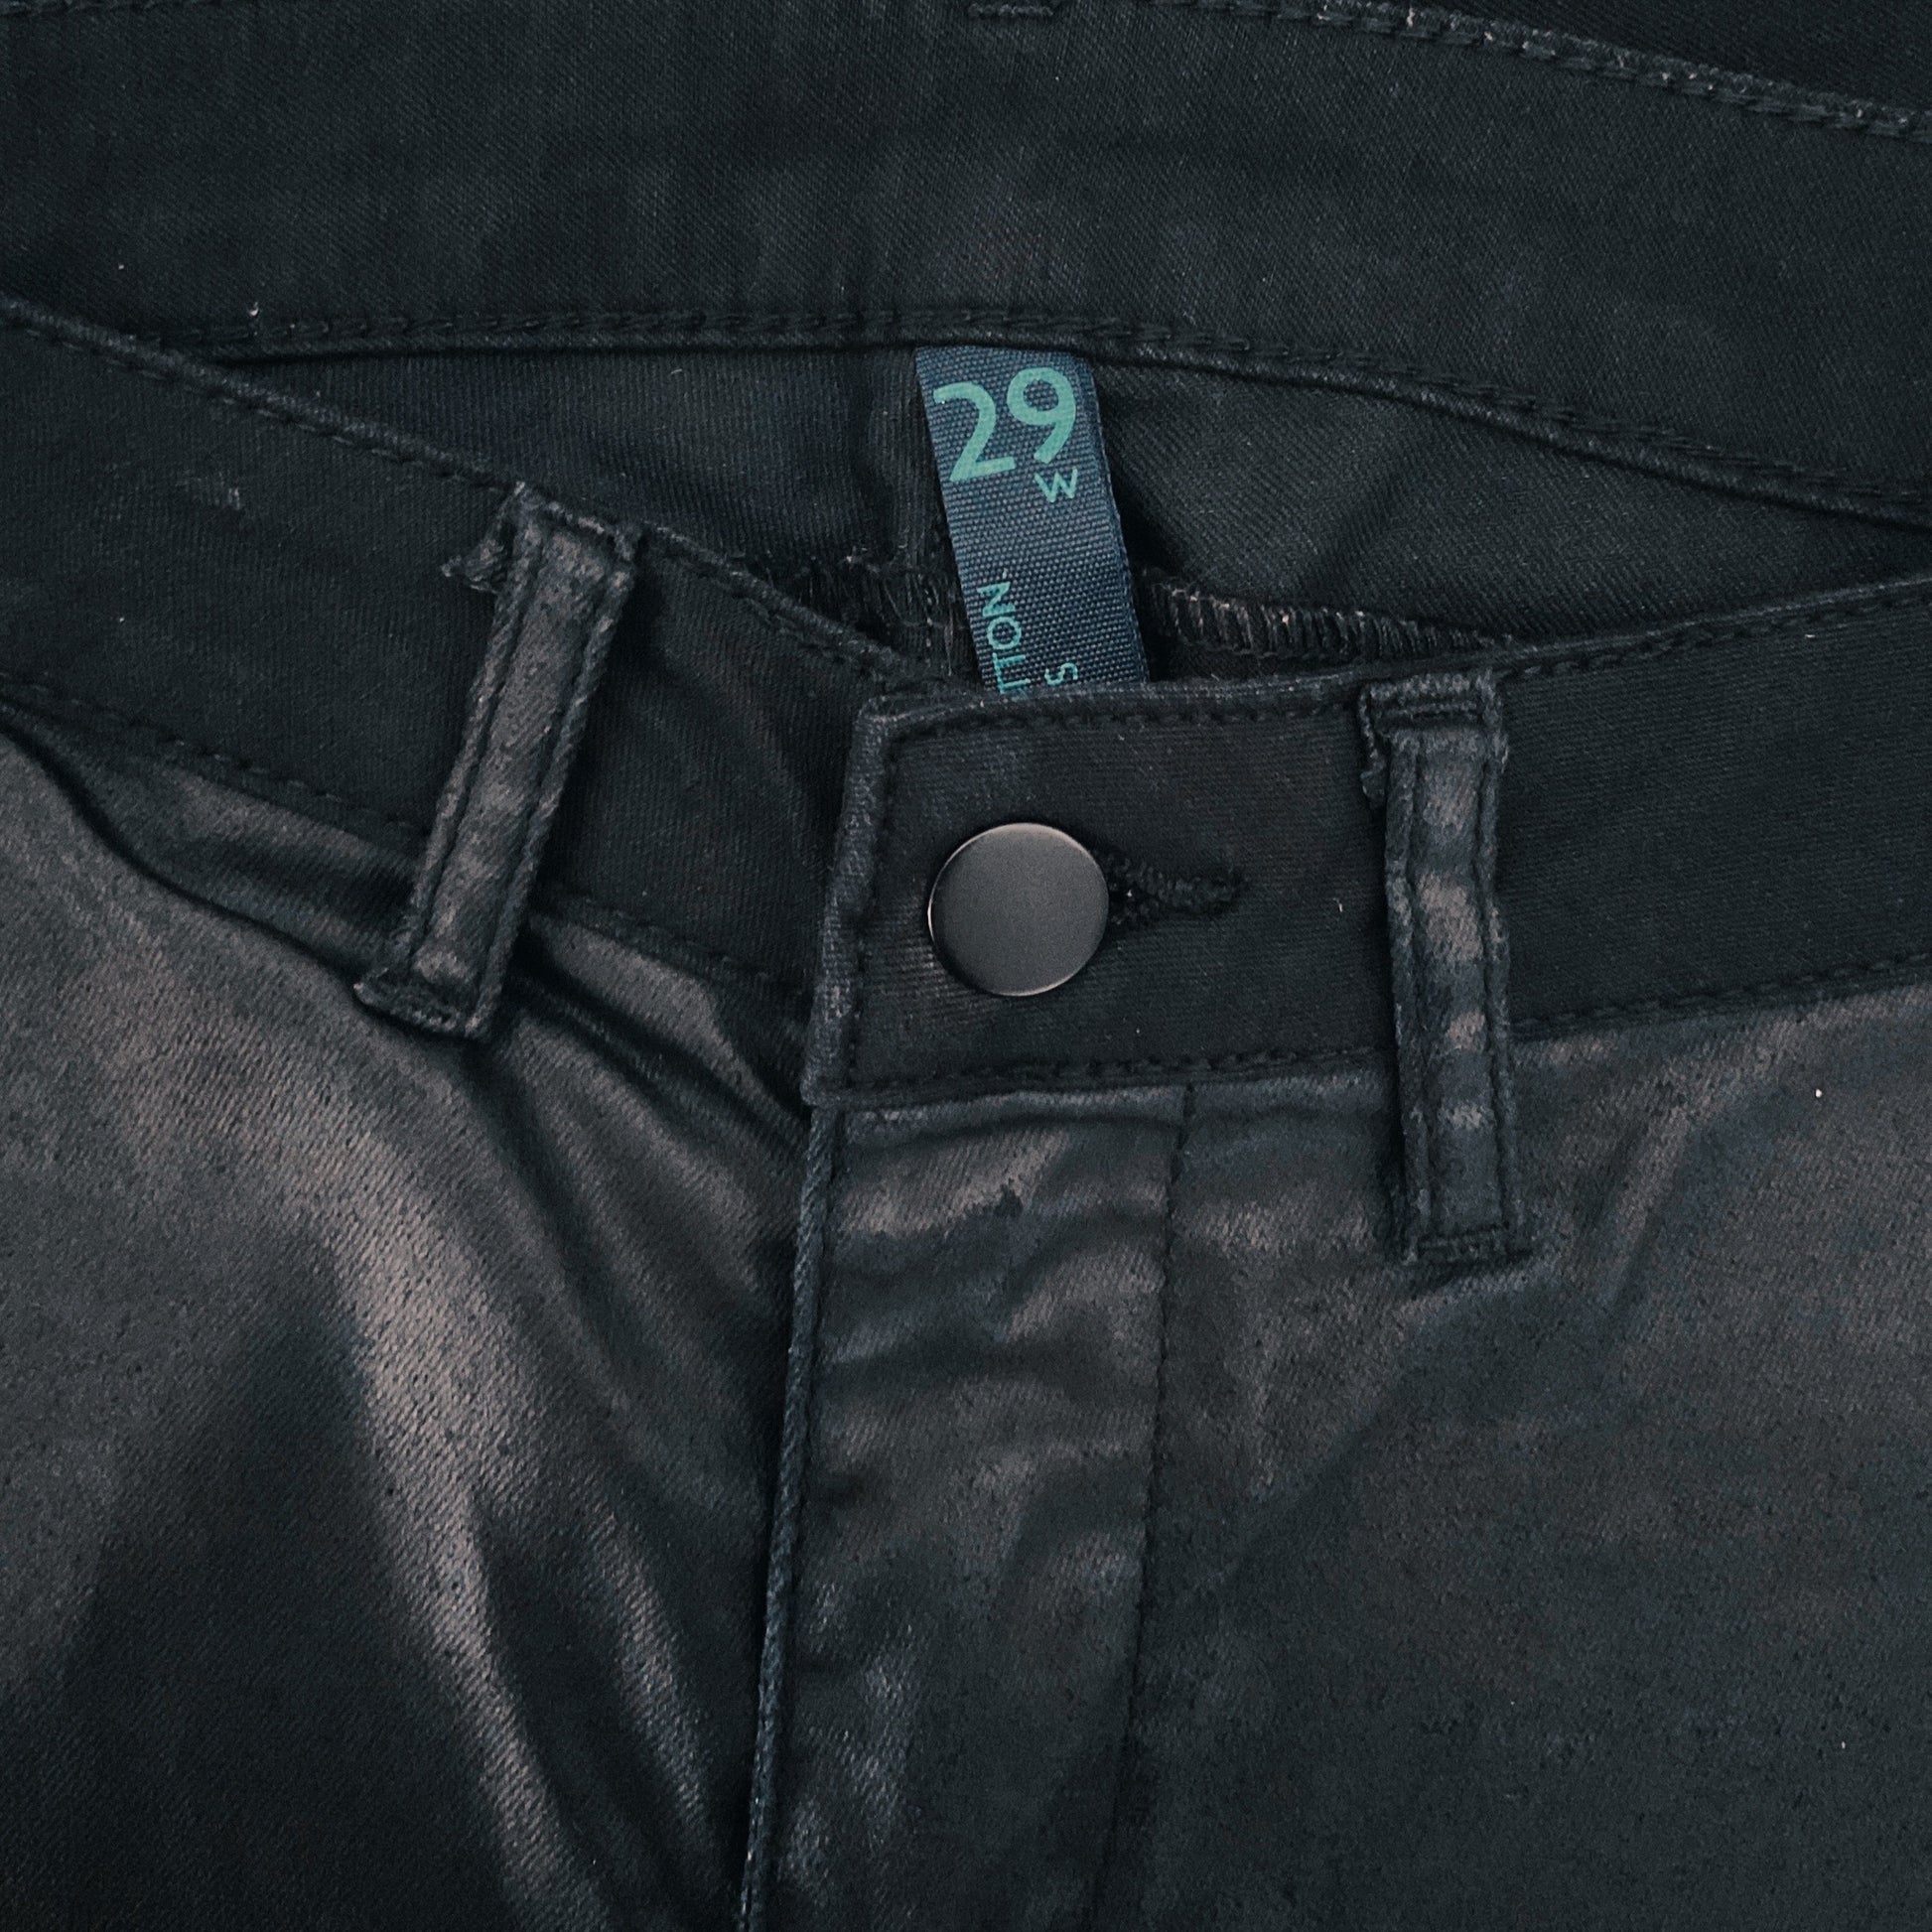 Pantalón Benetton Jeans Resina Negro - Talla 29 Preloved Shop